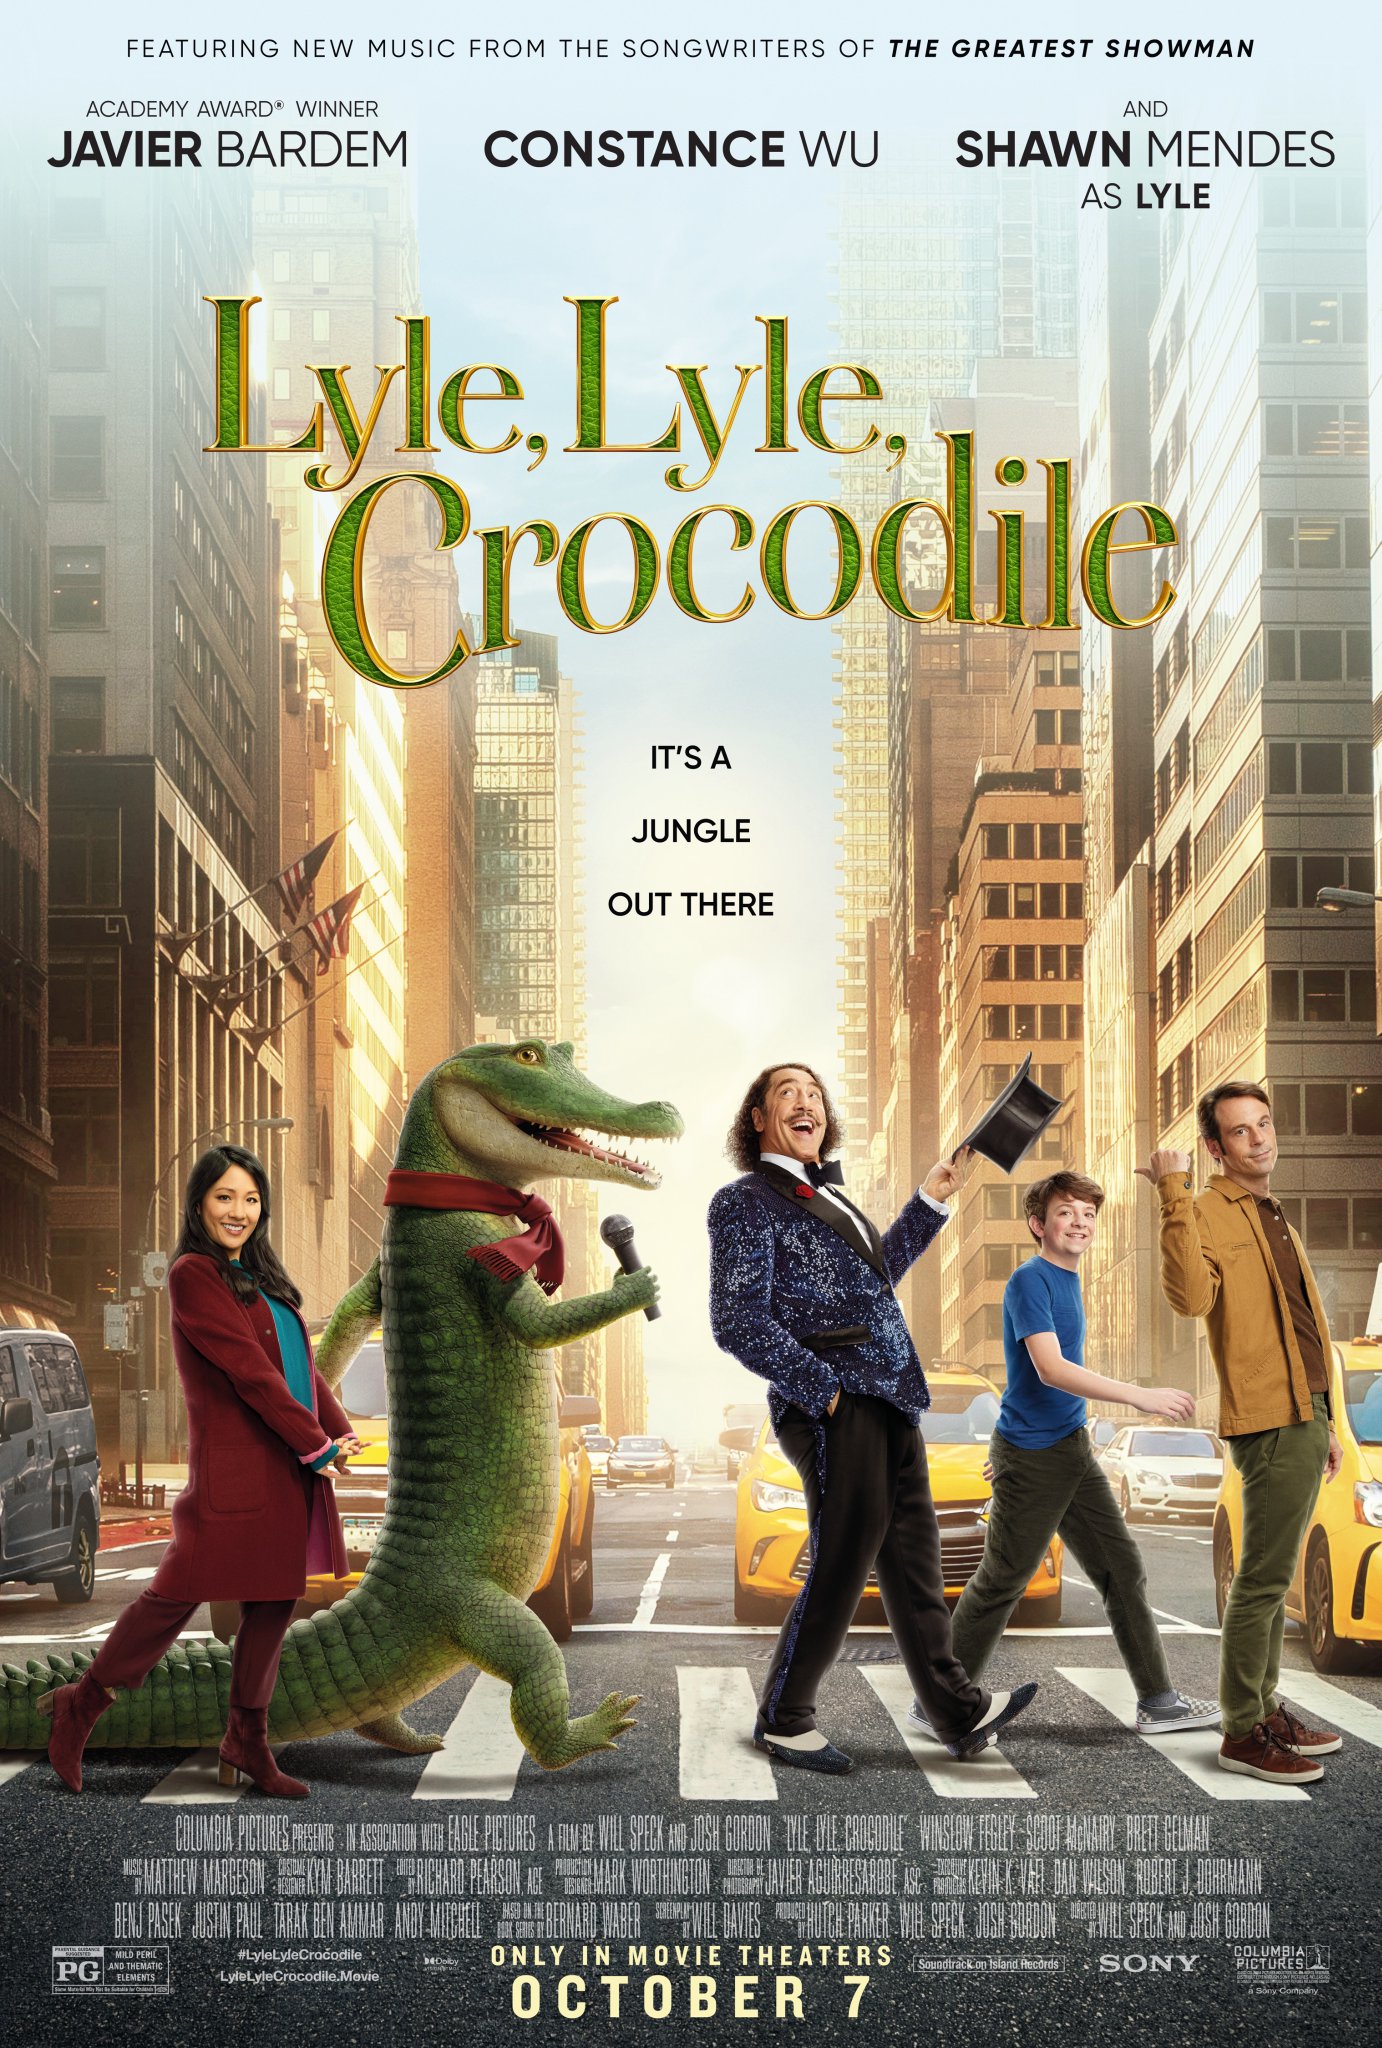 ดูหนัง Lyle Lyle Crocodile (2022) ไลล์ จระเข้ตัวพ่อ.. หัวใจล้อหล่อ [ซับไทย]